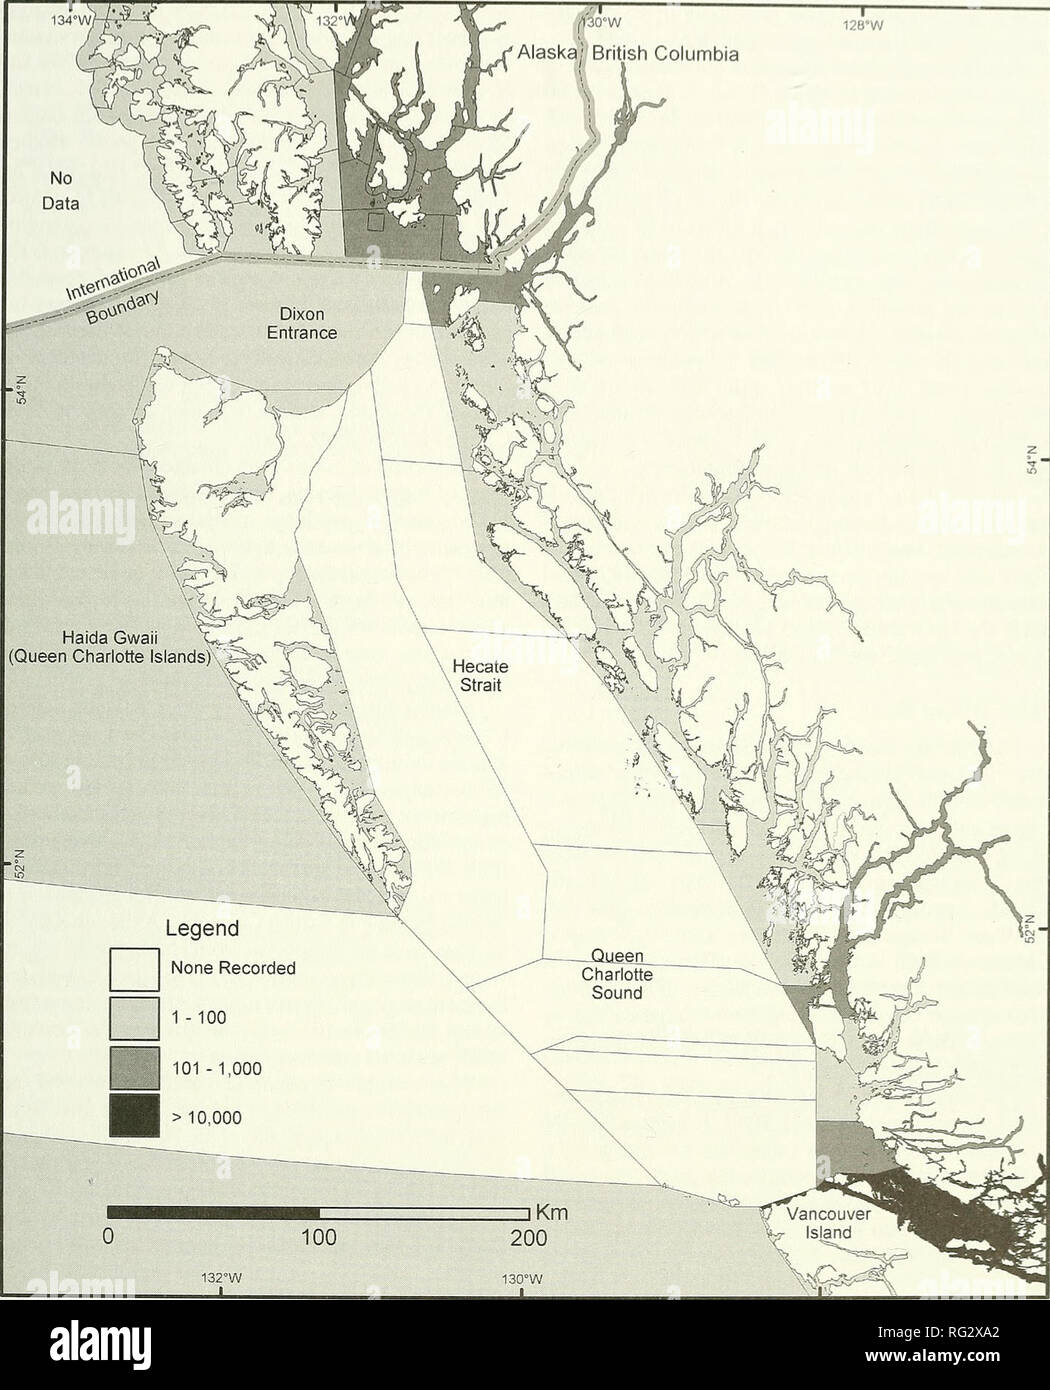 . Il campo Canadese-naturalista. 2004 Sloan e Bartier: Introdotto Specie Marine 81 TT- -1 12b-W /Alaska, " British Columbia. 132°W t  la figura 2. Mappa della British Columbia settentrionale e del sud-est Alaska regioni che mostrano la densità del salmone atlantico obser- vations. Tutti i dati sono da pesca e degli oceani del Canada il salmone atlantico guarda il programma: www.pac.dfo-mpo.gc. ca/sci/aqua/ASWP e.htm. [Accessibile Maggio, 2004]. British Columbia sono dati dal 1987 al 2002 e ripartito secondo la Pacific pesca aree di gestione e l'Alaska sono dati dal 1990 al 2002 e ripartito secondo l'Alaska Foto Stock